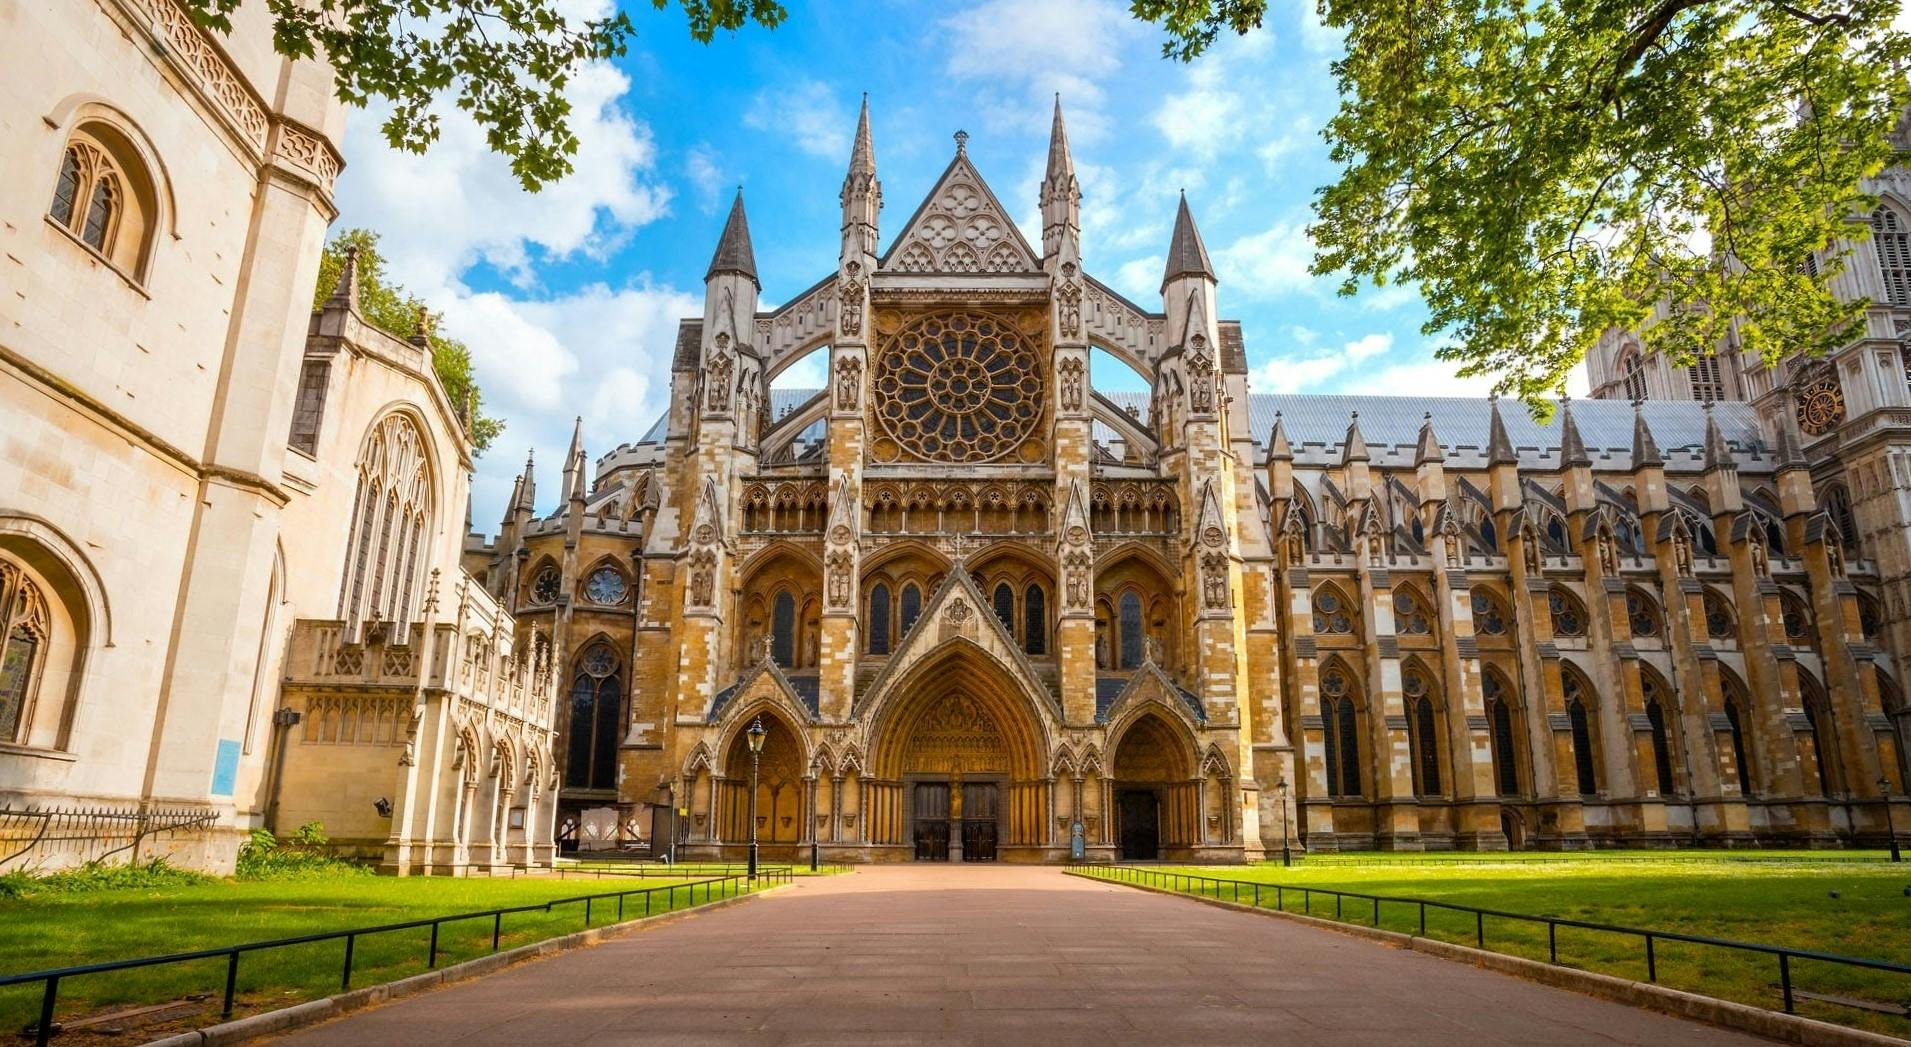 Tour ohne Anstehen durch die Westminster Abbey mit Jubilee Galleries